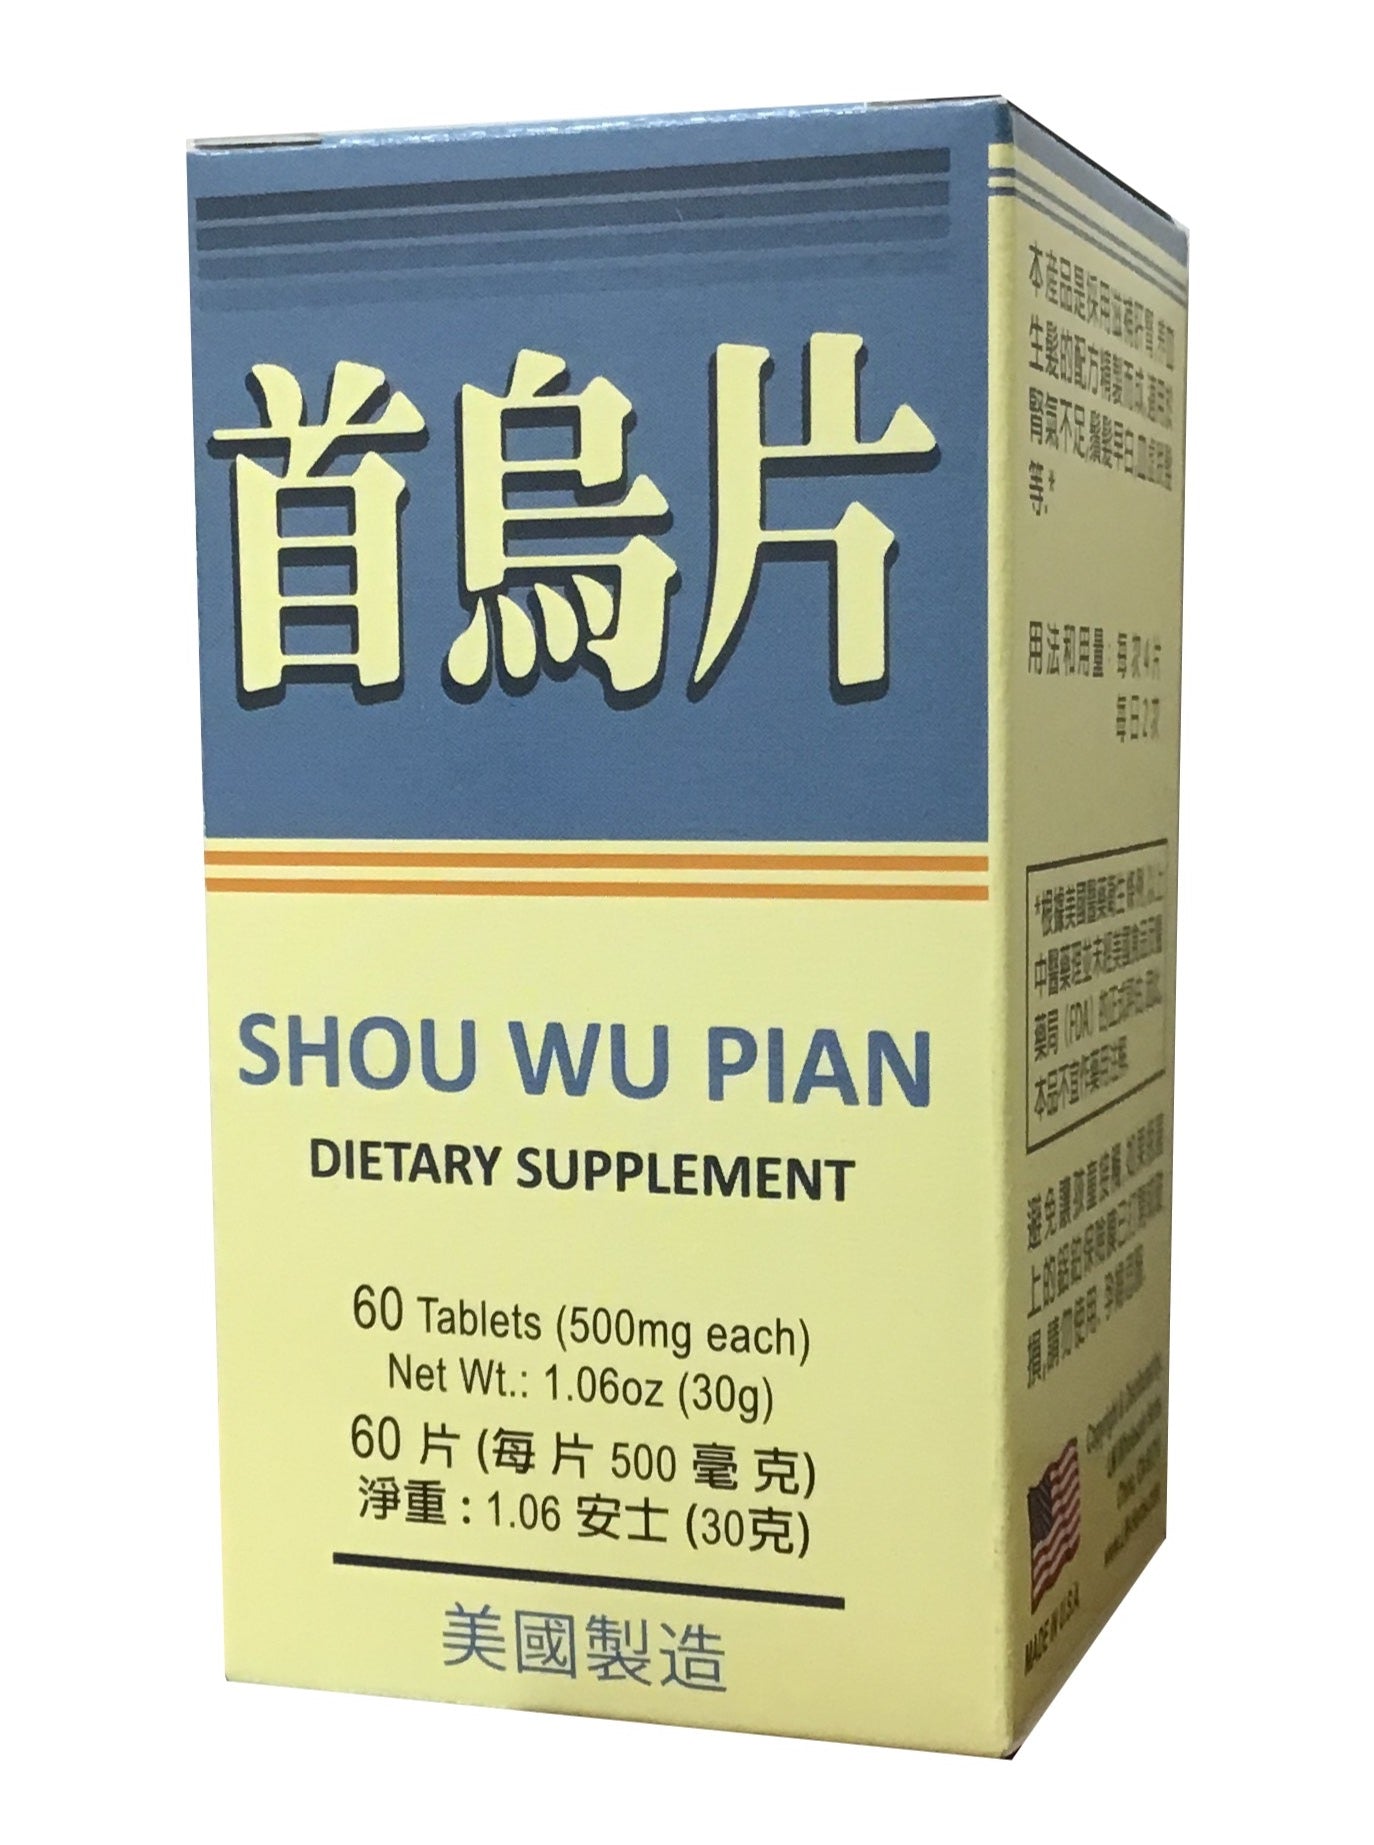 LW Shou Wu Pian (60 Tablets) 老威牌 首烏片 (60片)